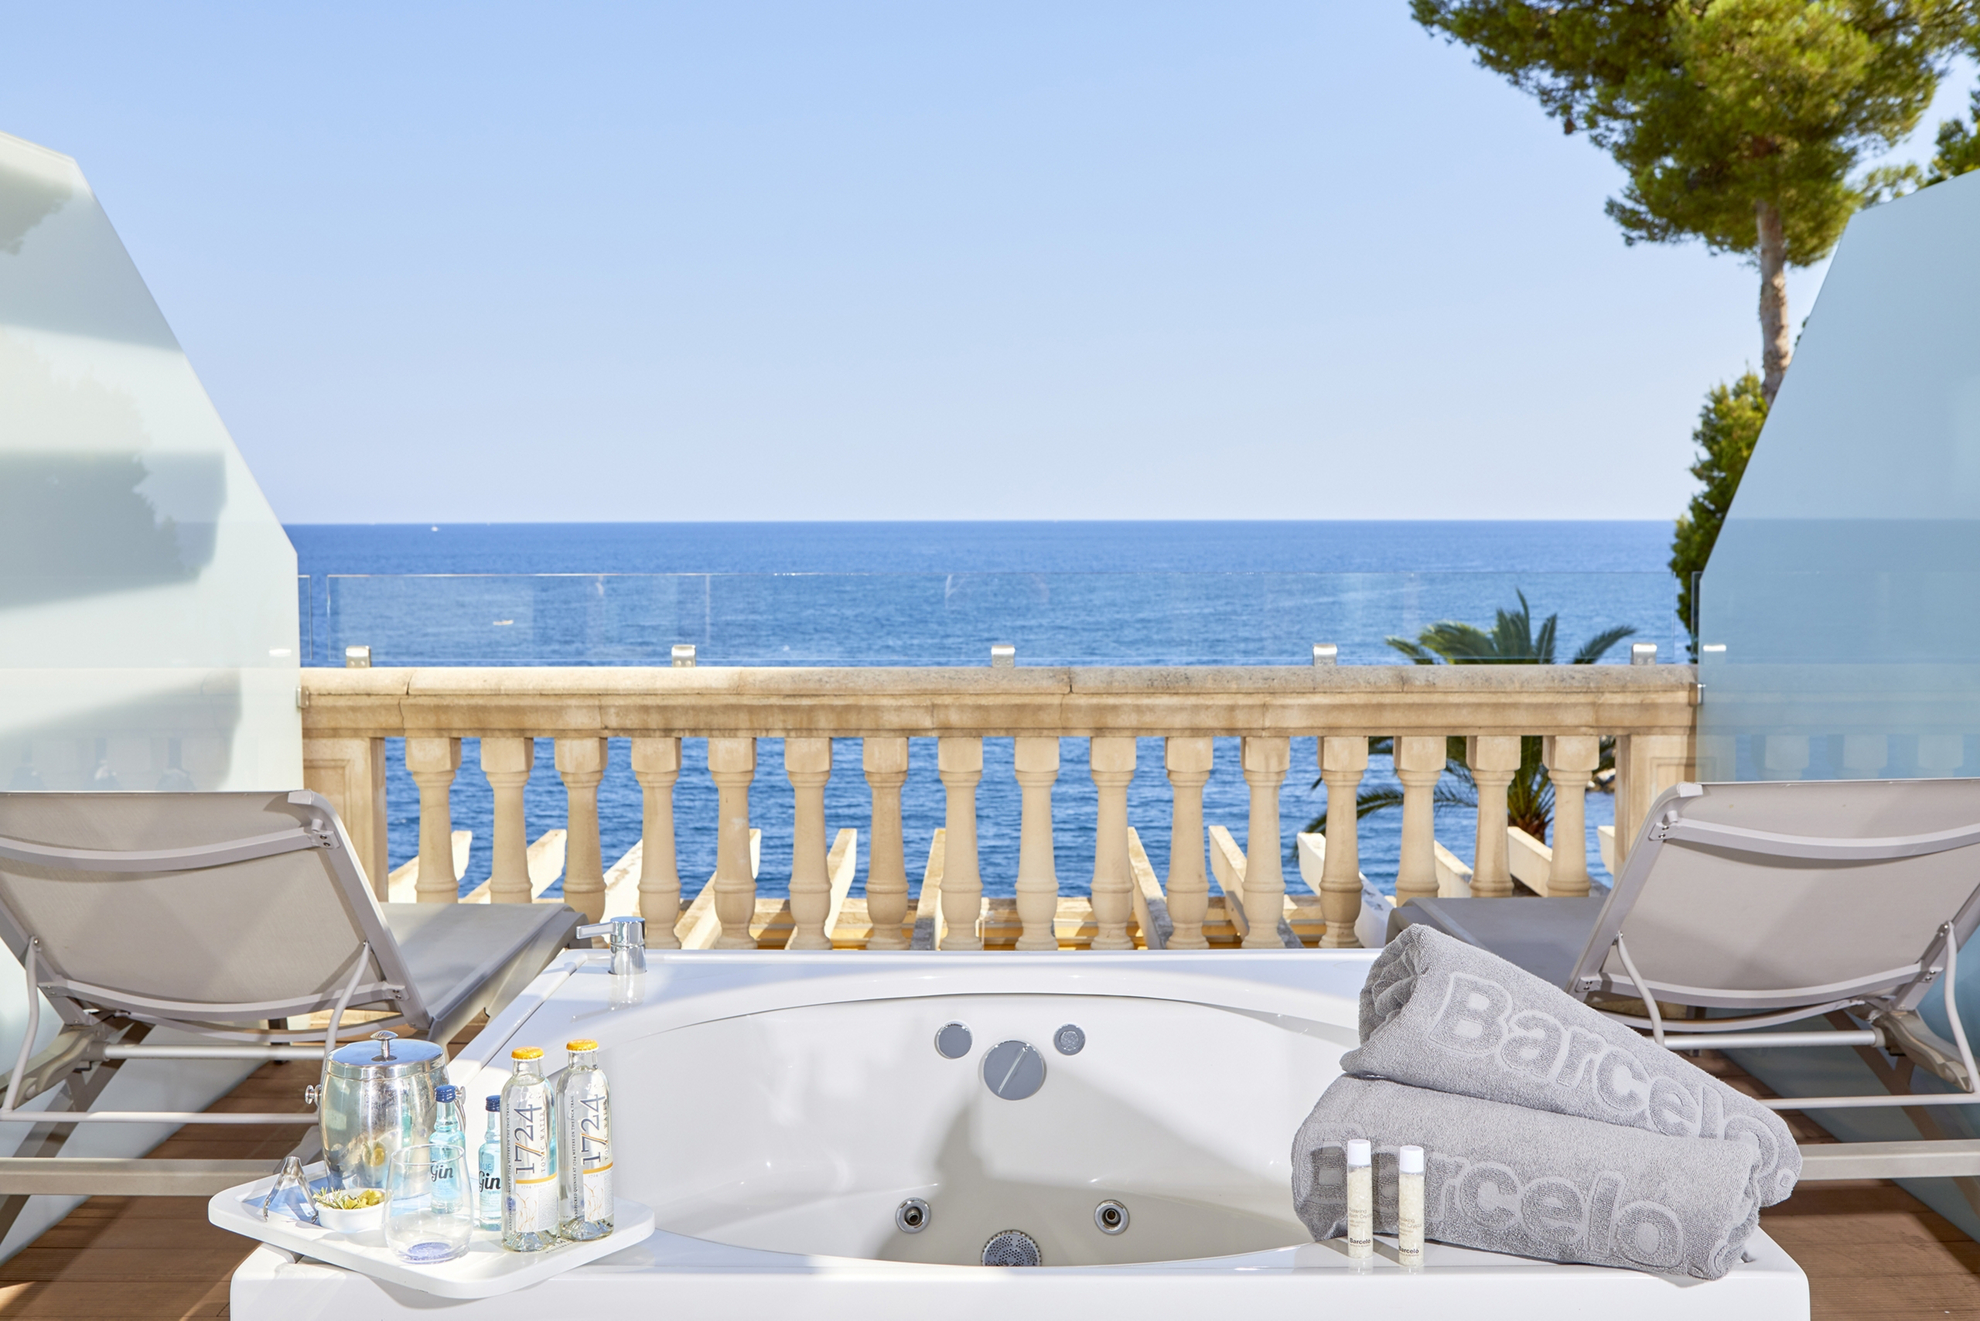 Babymoon-Urlaubsziele: Balkon mit Whirlpool und zwei Liegen mit Blick aufs Mittelmeer in Mallorca.